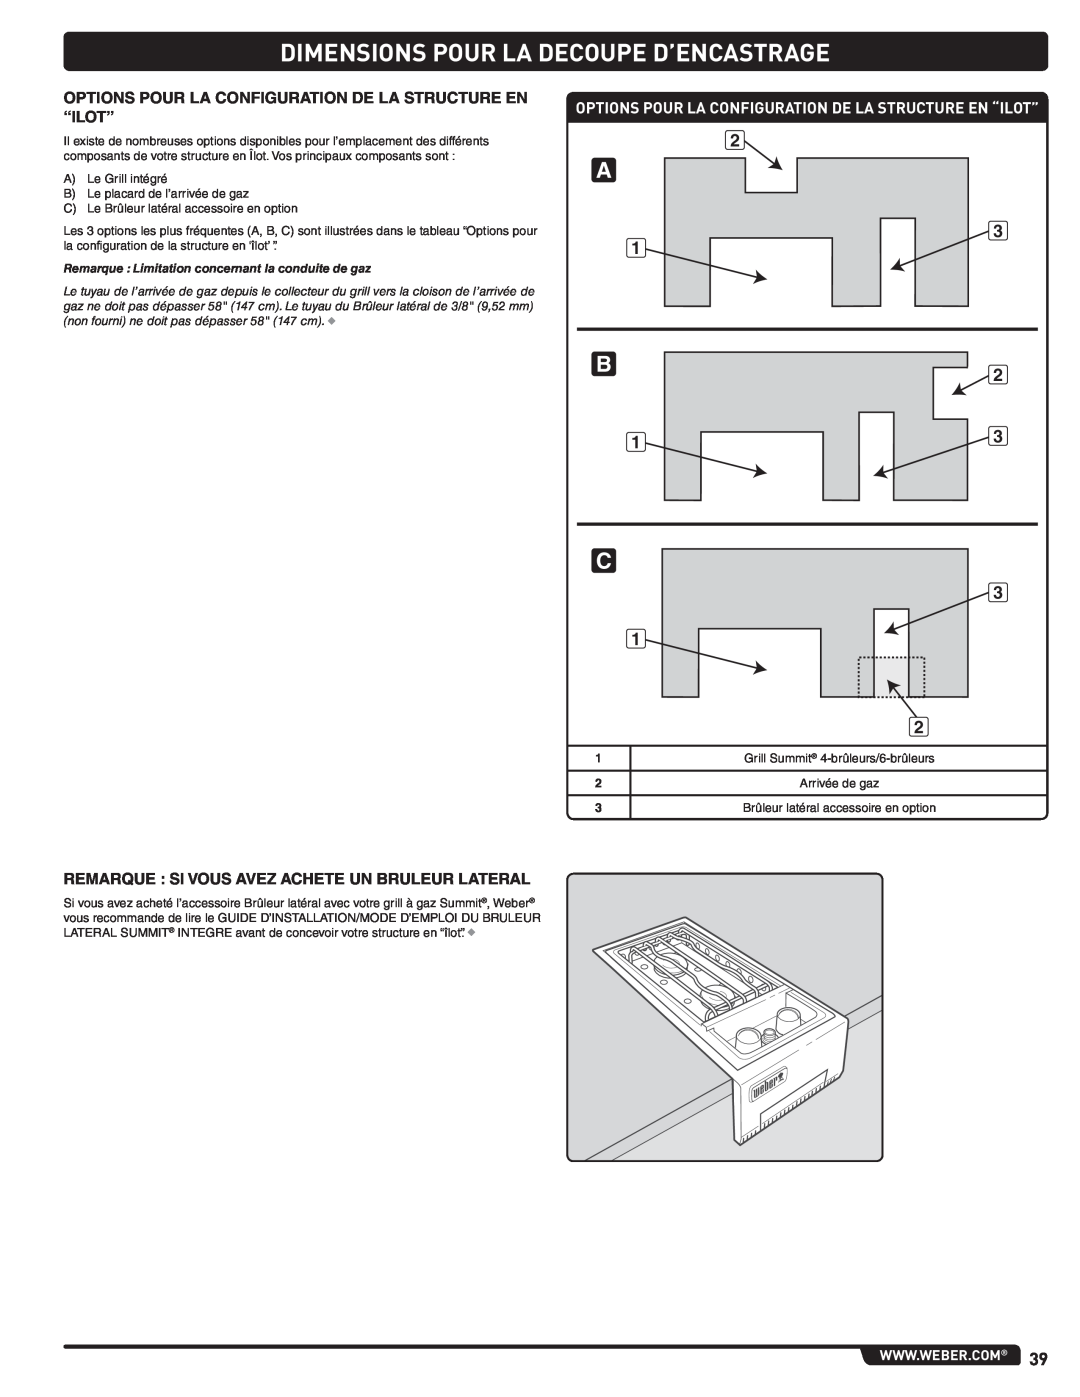 Weber 56576 manual Dimensions Pour La Decoupe D’Encastrage, Options Pour La Configuration De La Structure En “Ilot” 